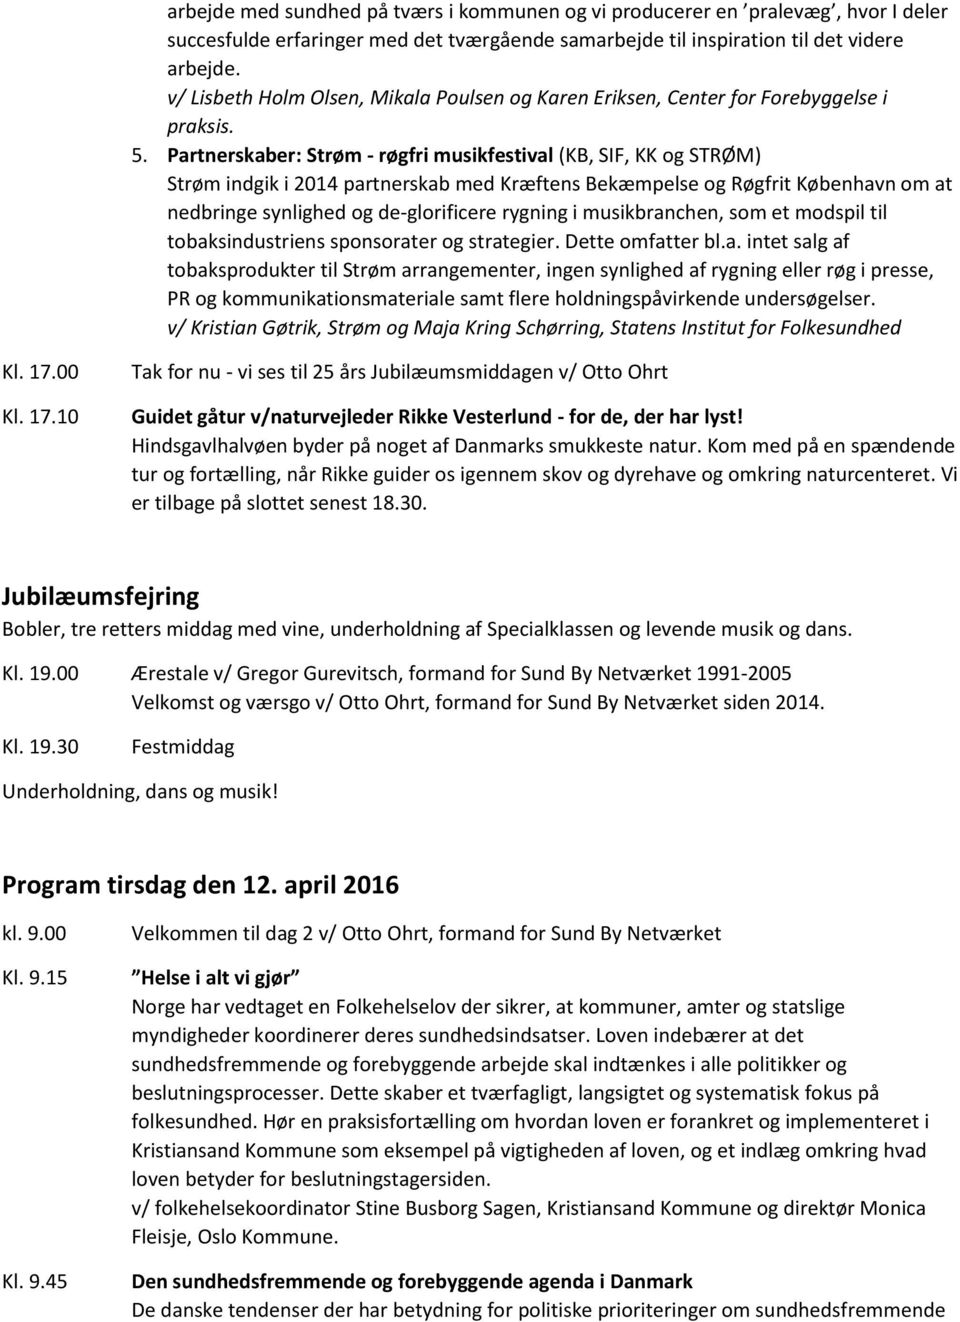 Partnerskaber: Strøm - røgfri musikfestival (KB, SIF, KK og STRØM) Strøm indgik i 2014 partnerskab med Kræftens Bekæmpelse og Røgfrit København om at nedbringe synlighed og de-glorificere rygning i